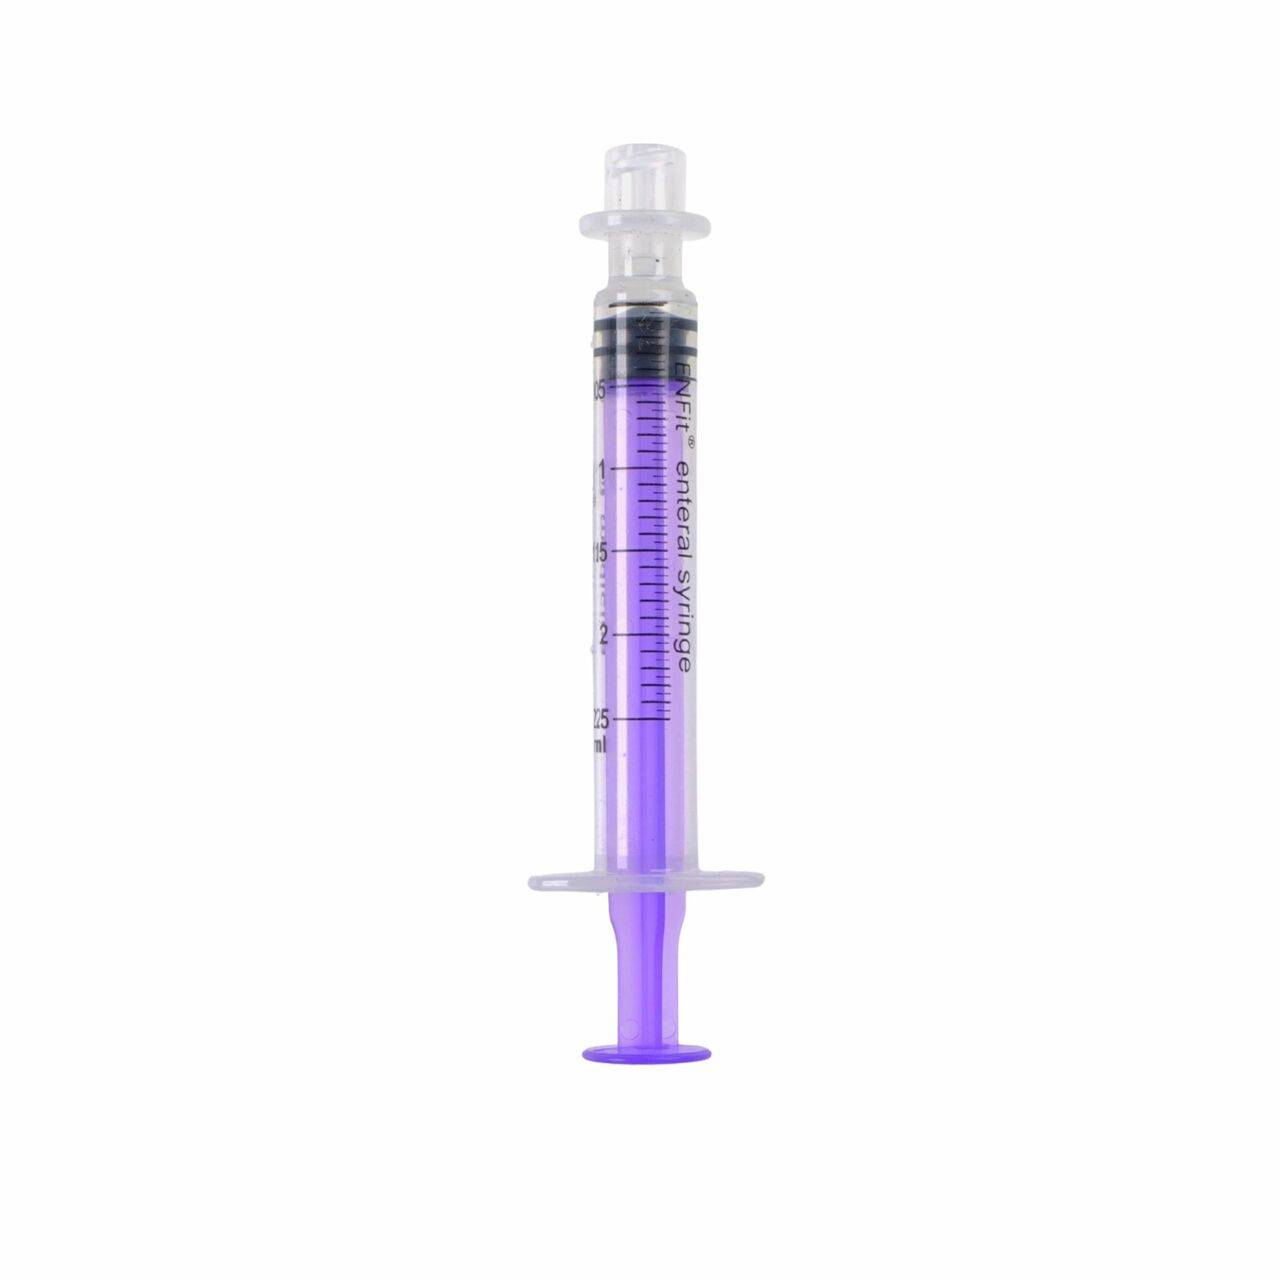 2.5ml ENFIT Low Dose Medicina Syringe - UKMEDI